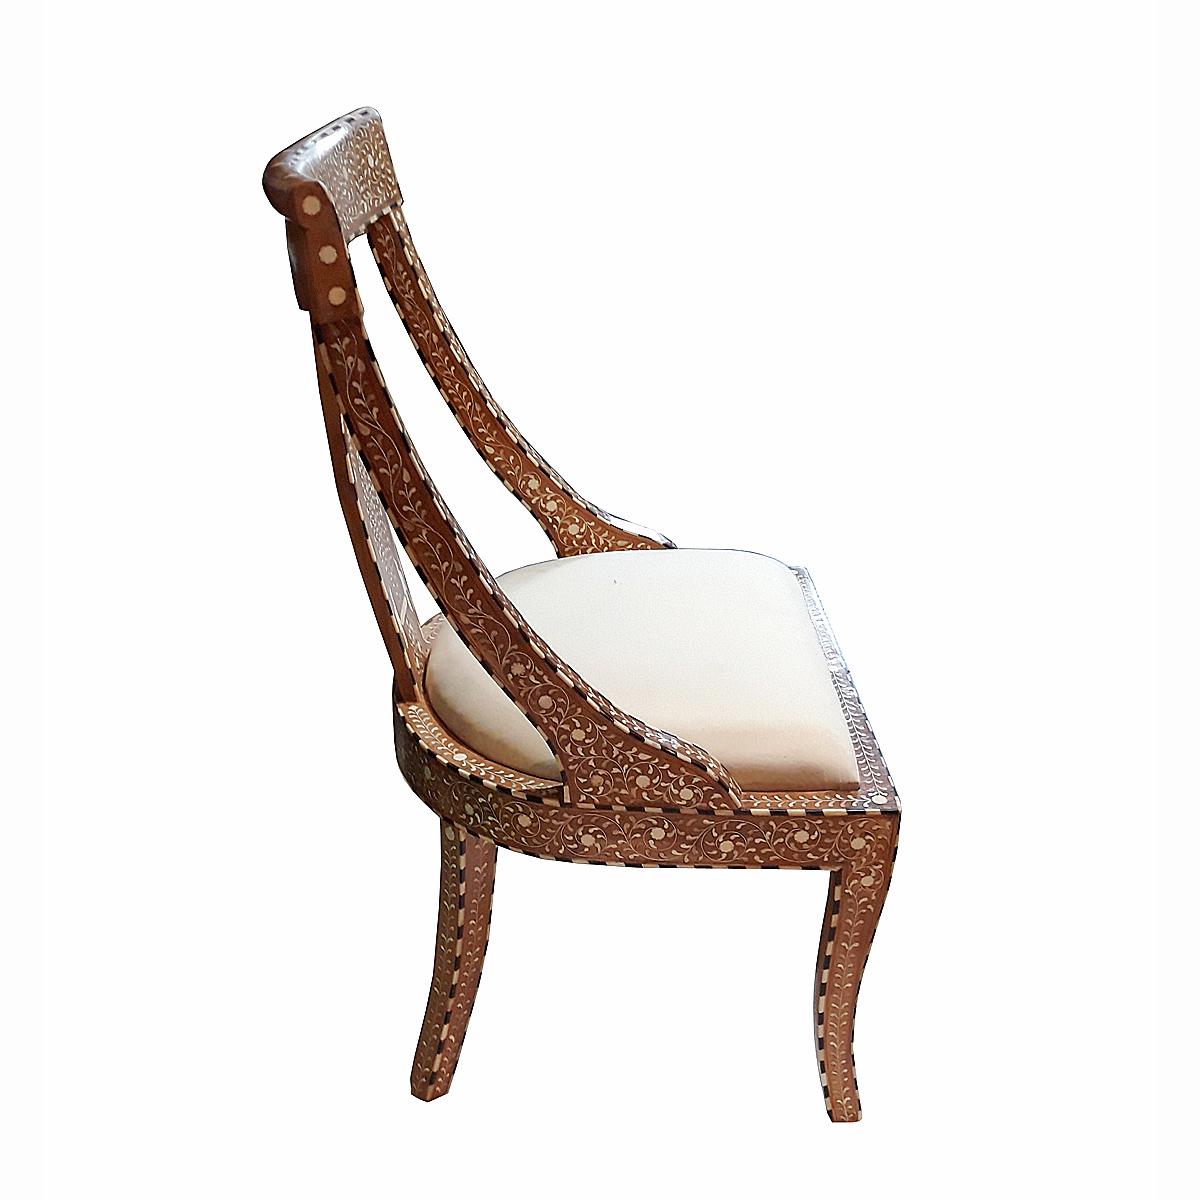 Teak Bone-Inlaid Armless Chair with Cushion